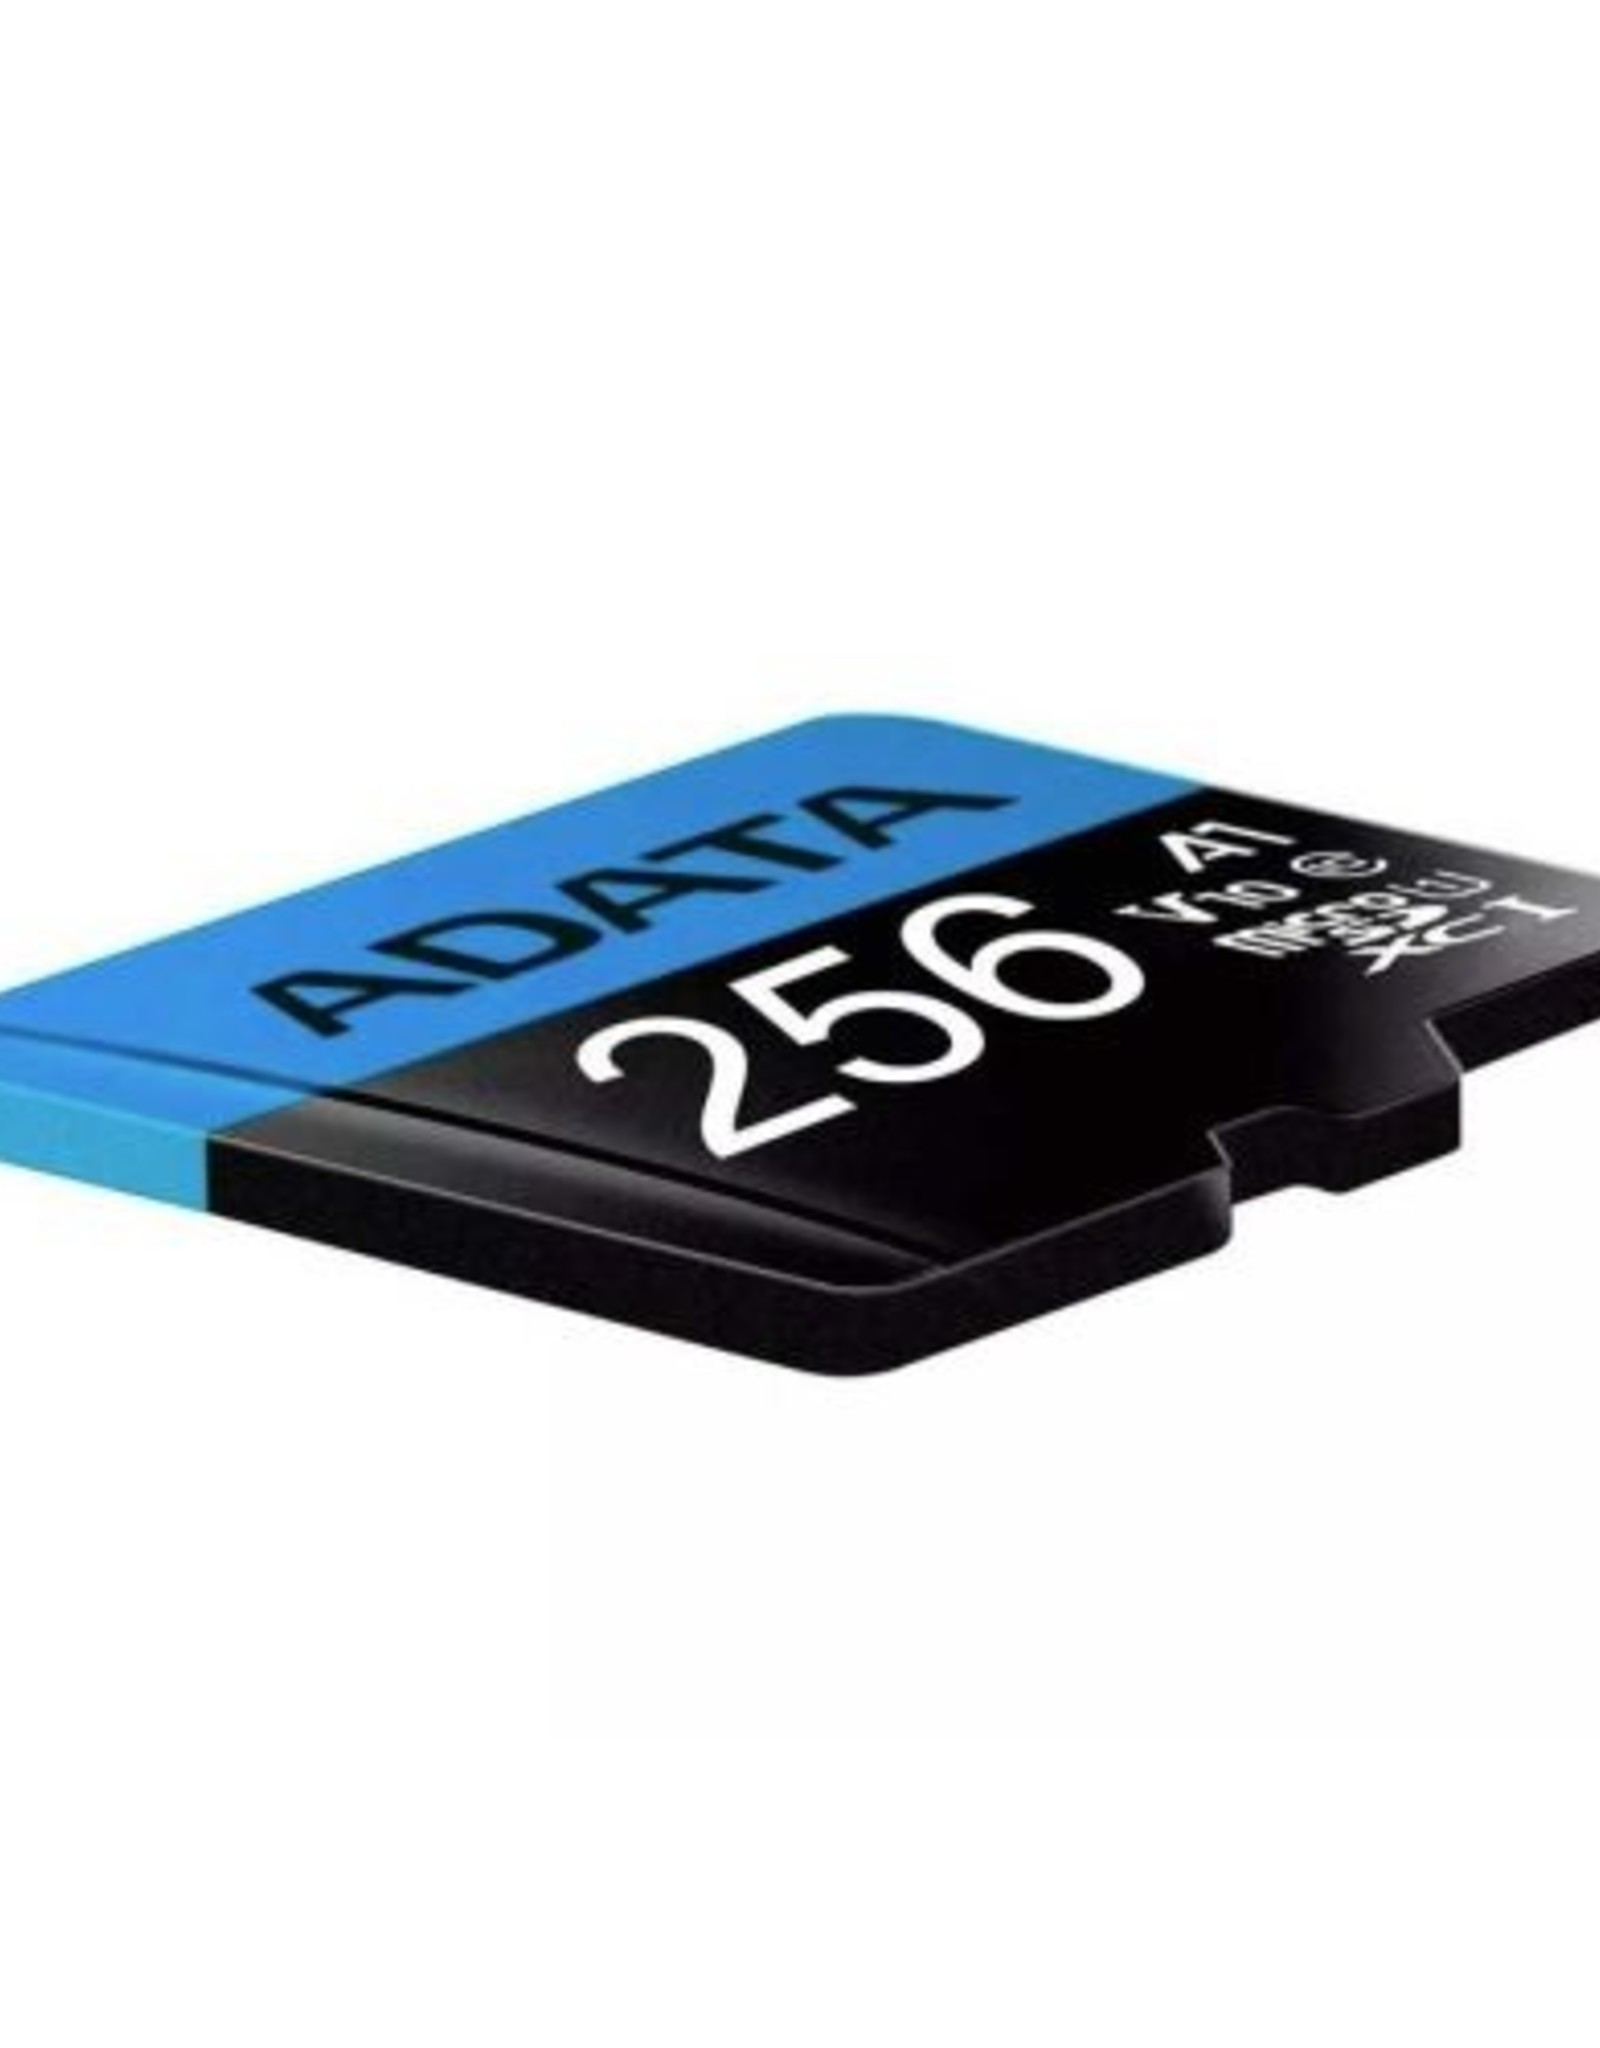 ADATA ADATA 256GB HIGH CAPACITY CLASS10-A1 SD CARD,READ/WRITE 100/25MBS, +  SD ADAP